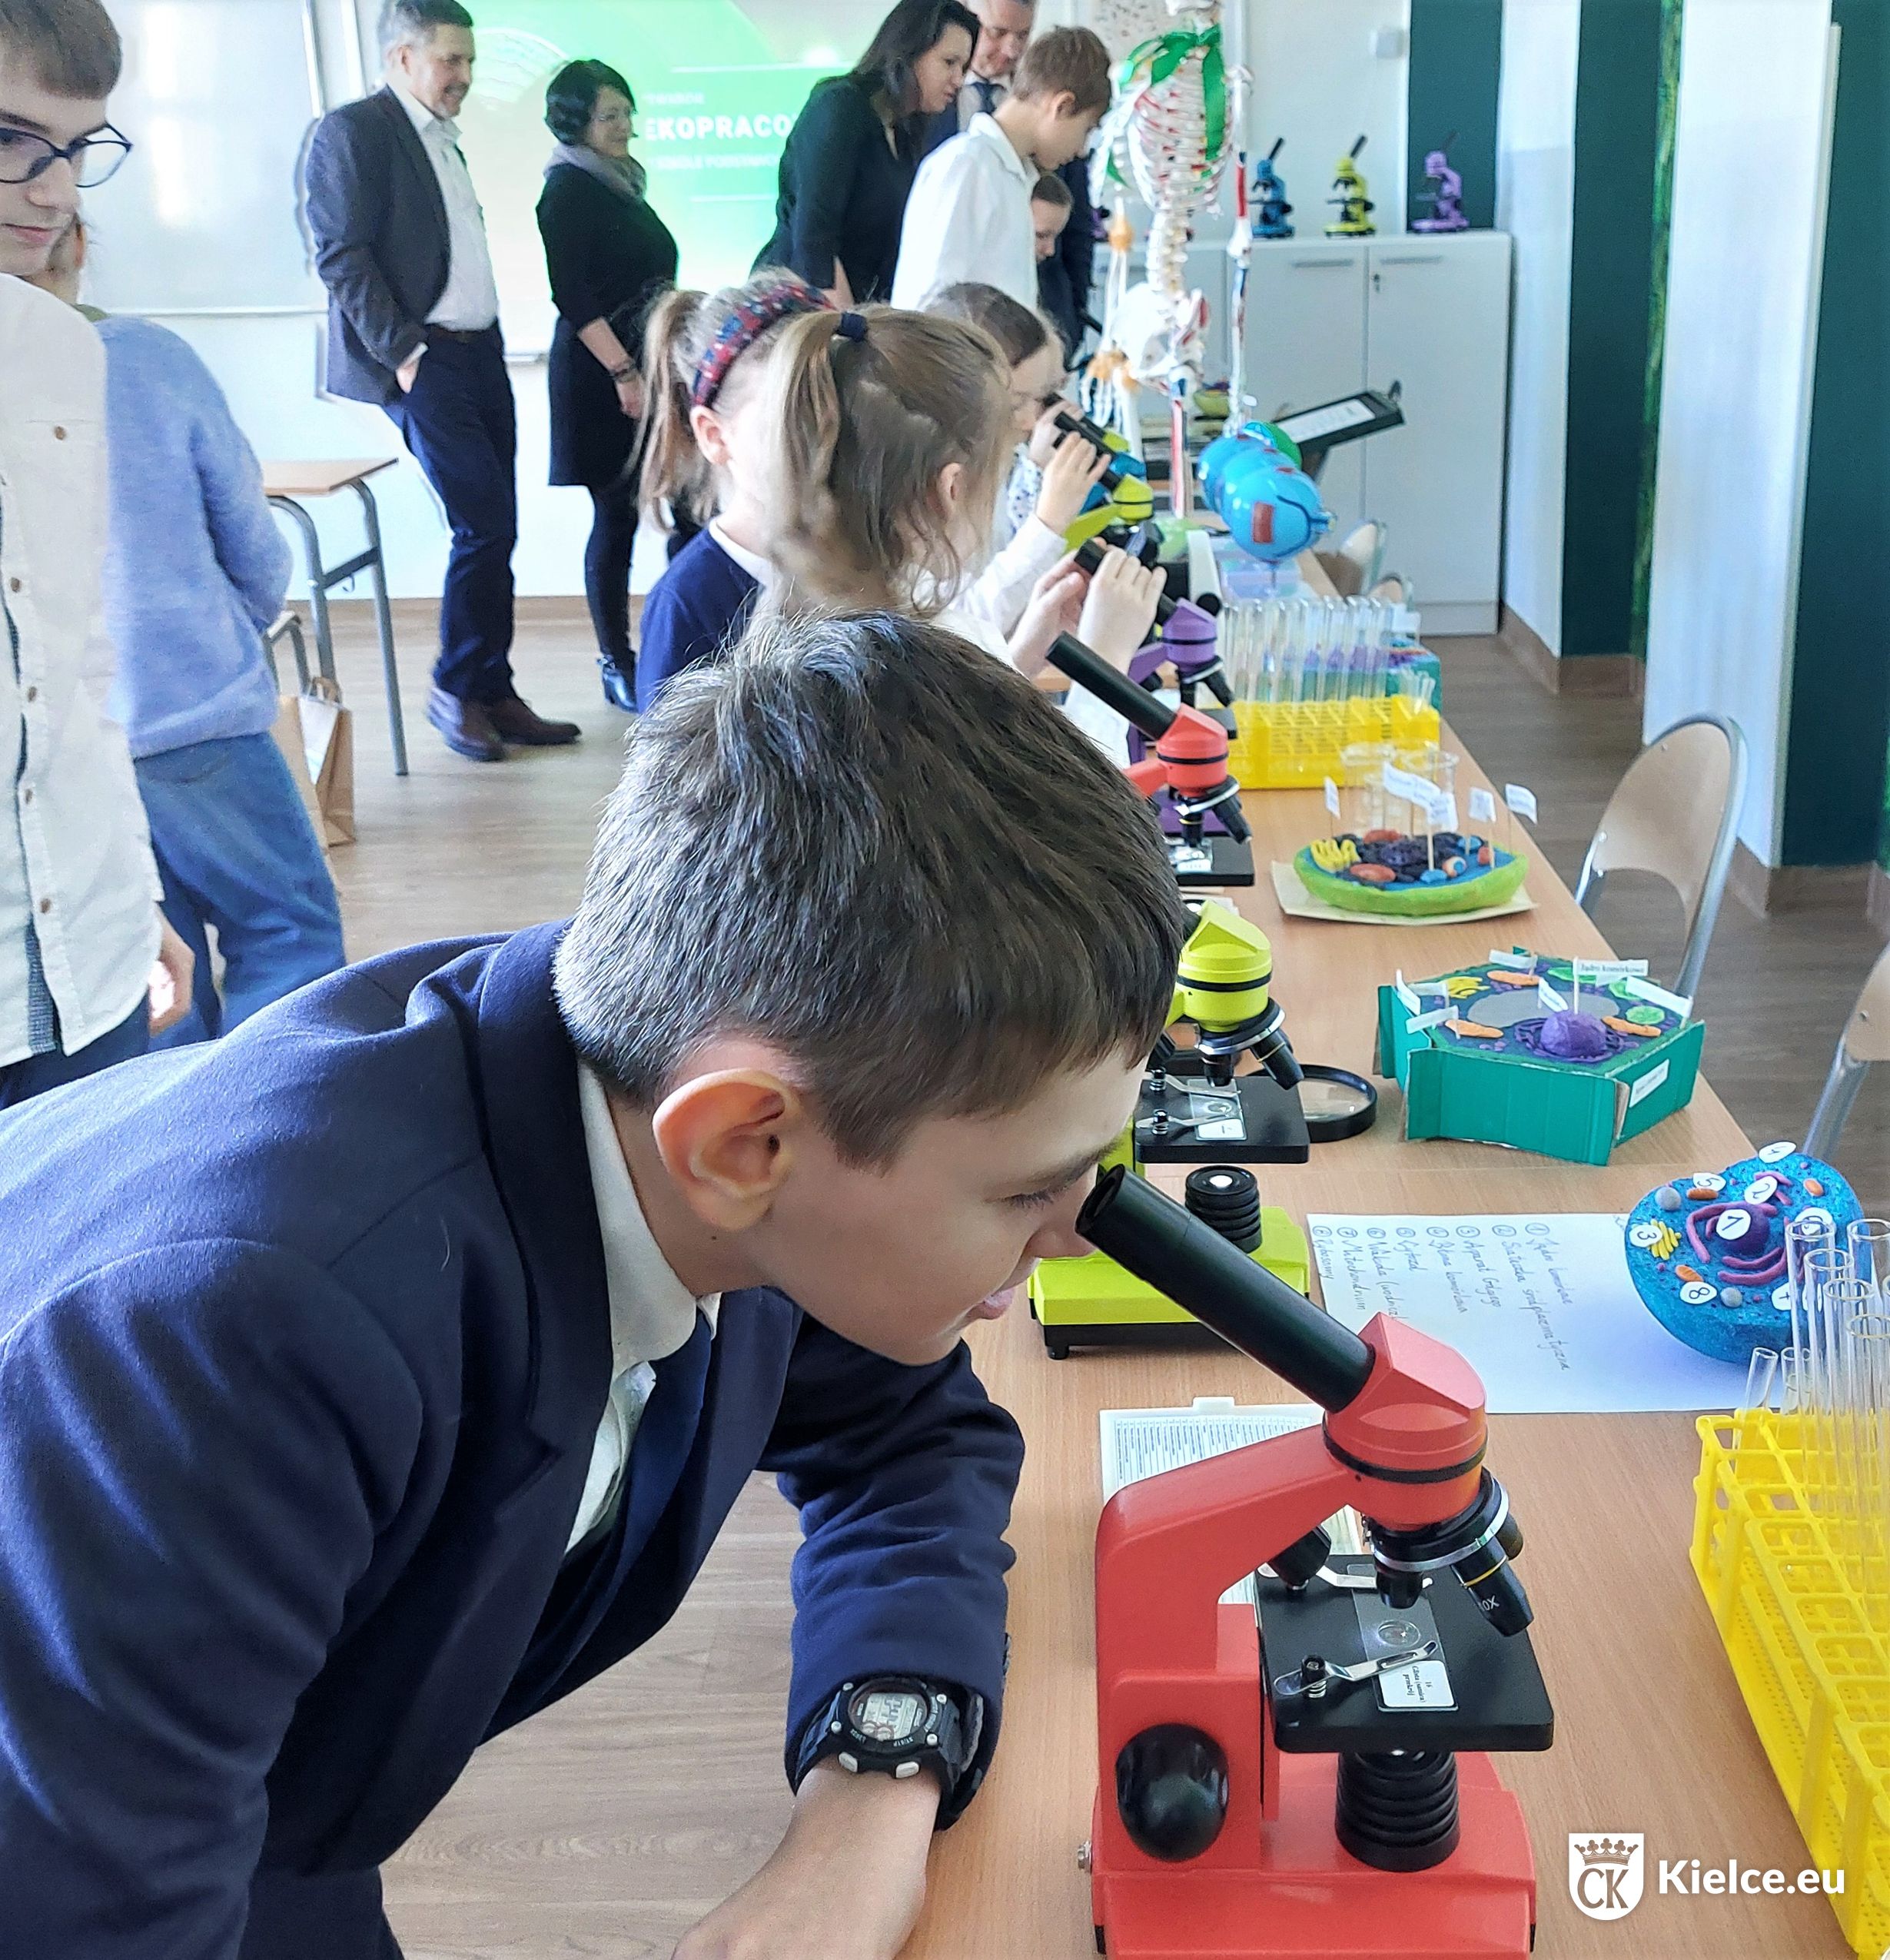 Na pierwszym planie chłopiec oglądający preparat przez mikroskop, w tle inne dzieci i dorośli oglądający nowy sprzęt w ekopracowni